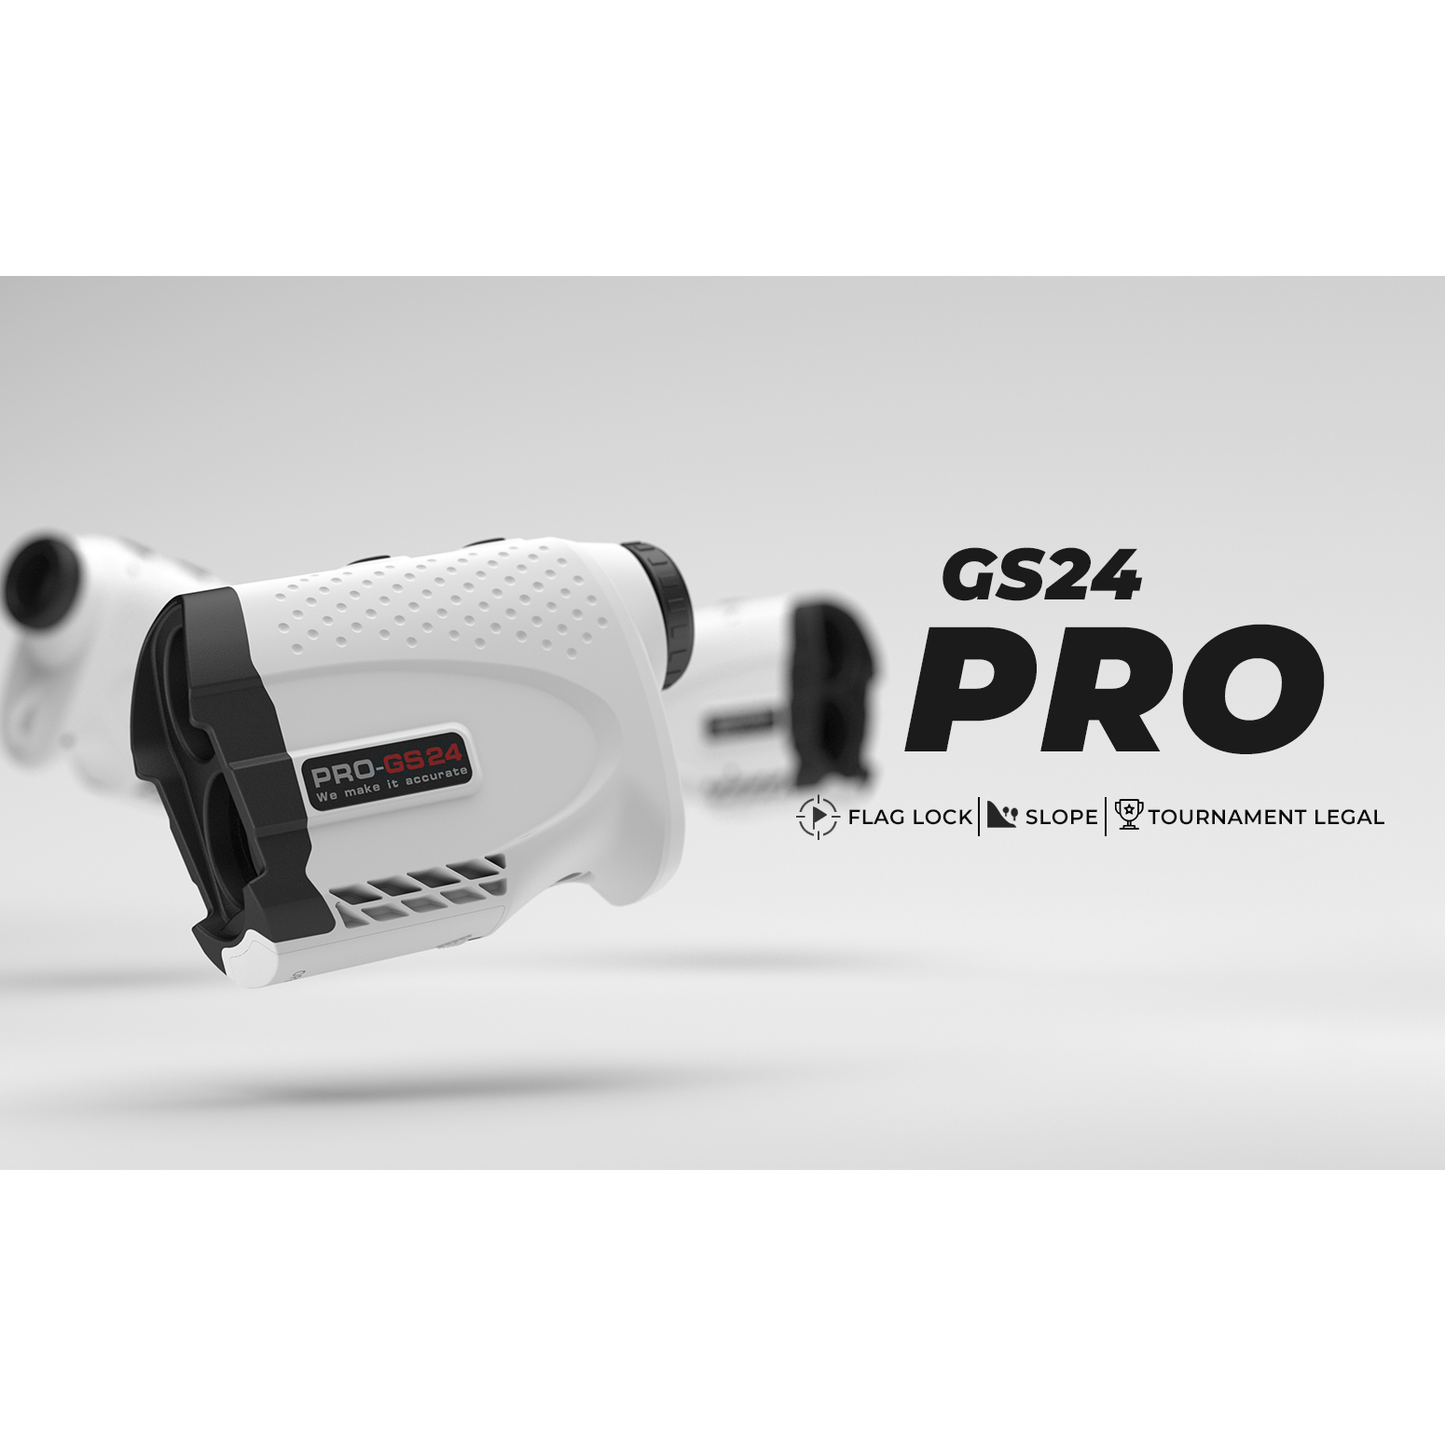 Laser Rangefinder for Golf or Hunting|Gogogo Slope Scan|GS24 White 650Y/1200Y